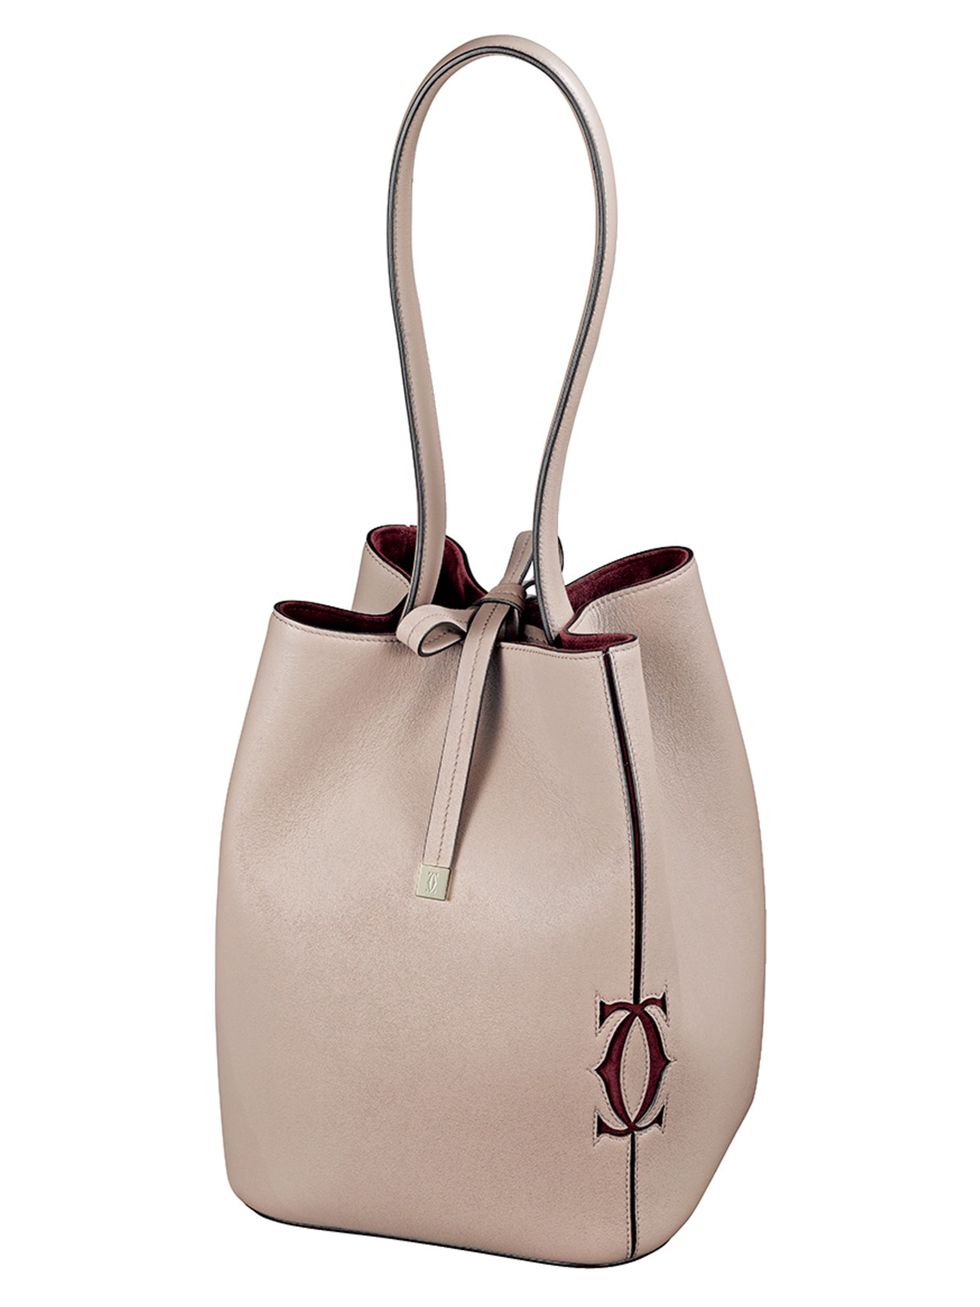 Handbag, Bag, White, Fashion accessory, Pink, Beige, Shoulder bag, Brown, Leather, Material property, 